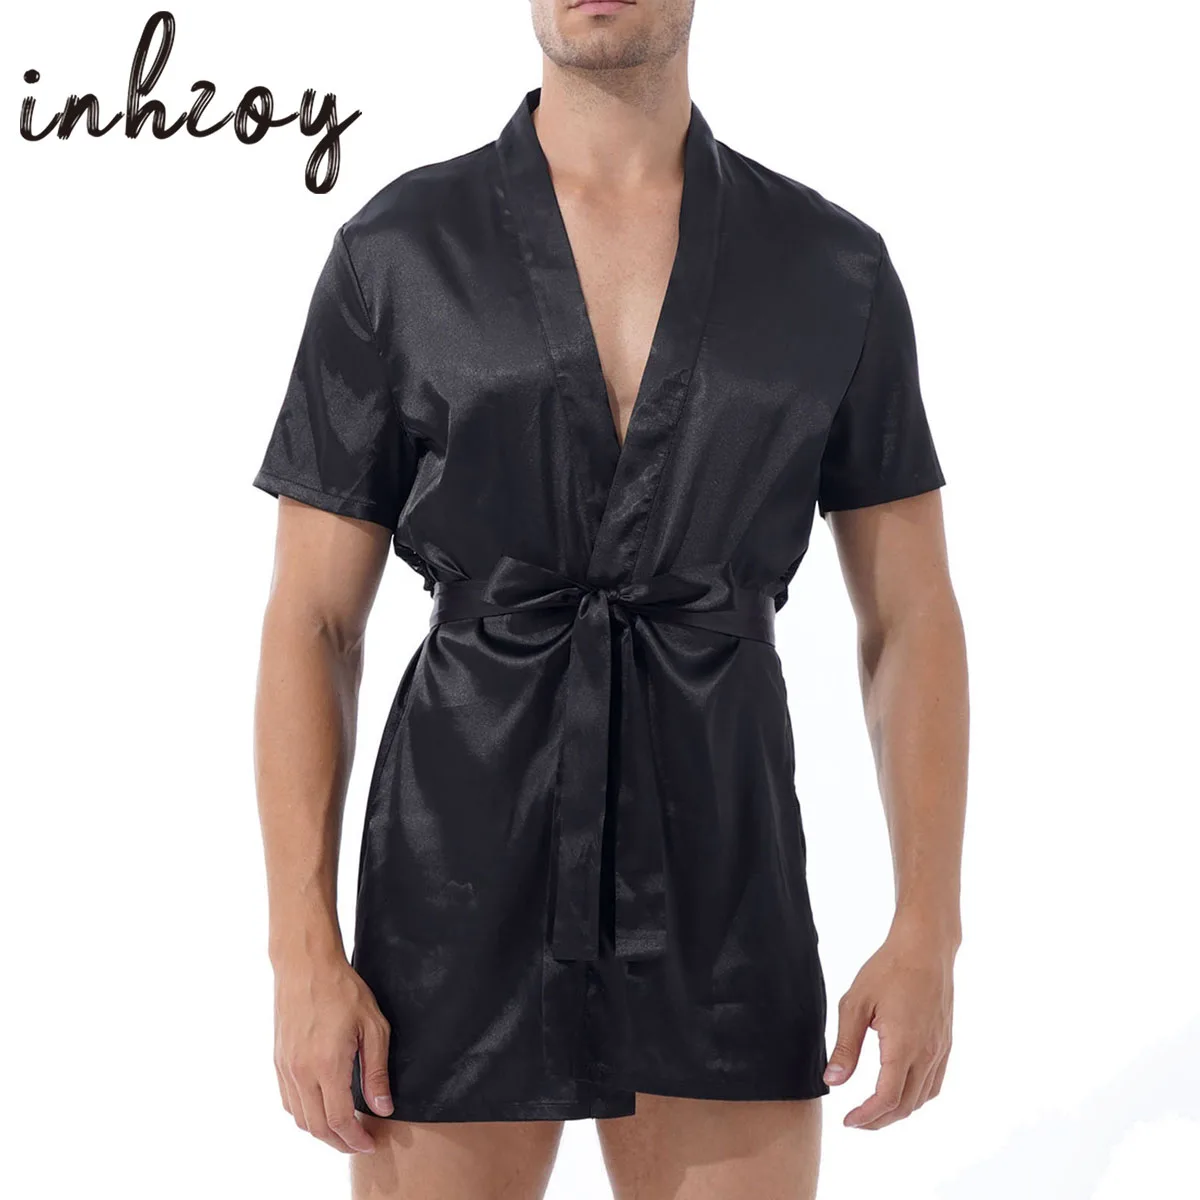 Халат-кимоно мужской черный атласный шелковый халат легкая одежда для отдыха | Халаты -1005002835376419